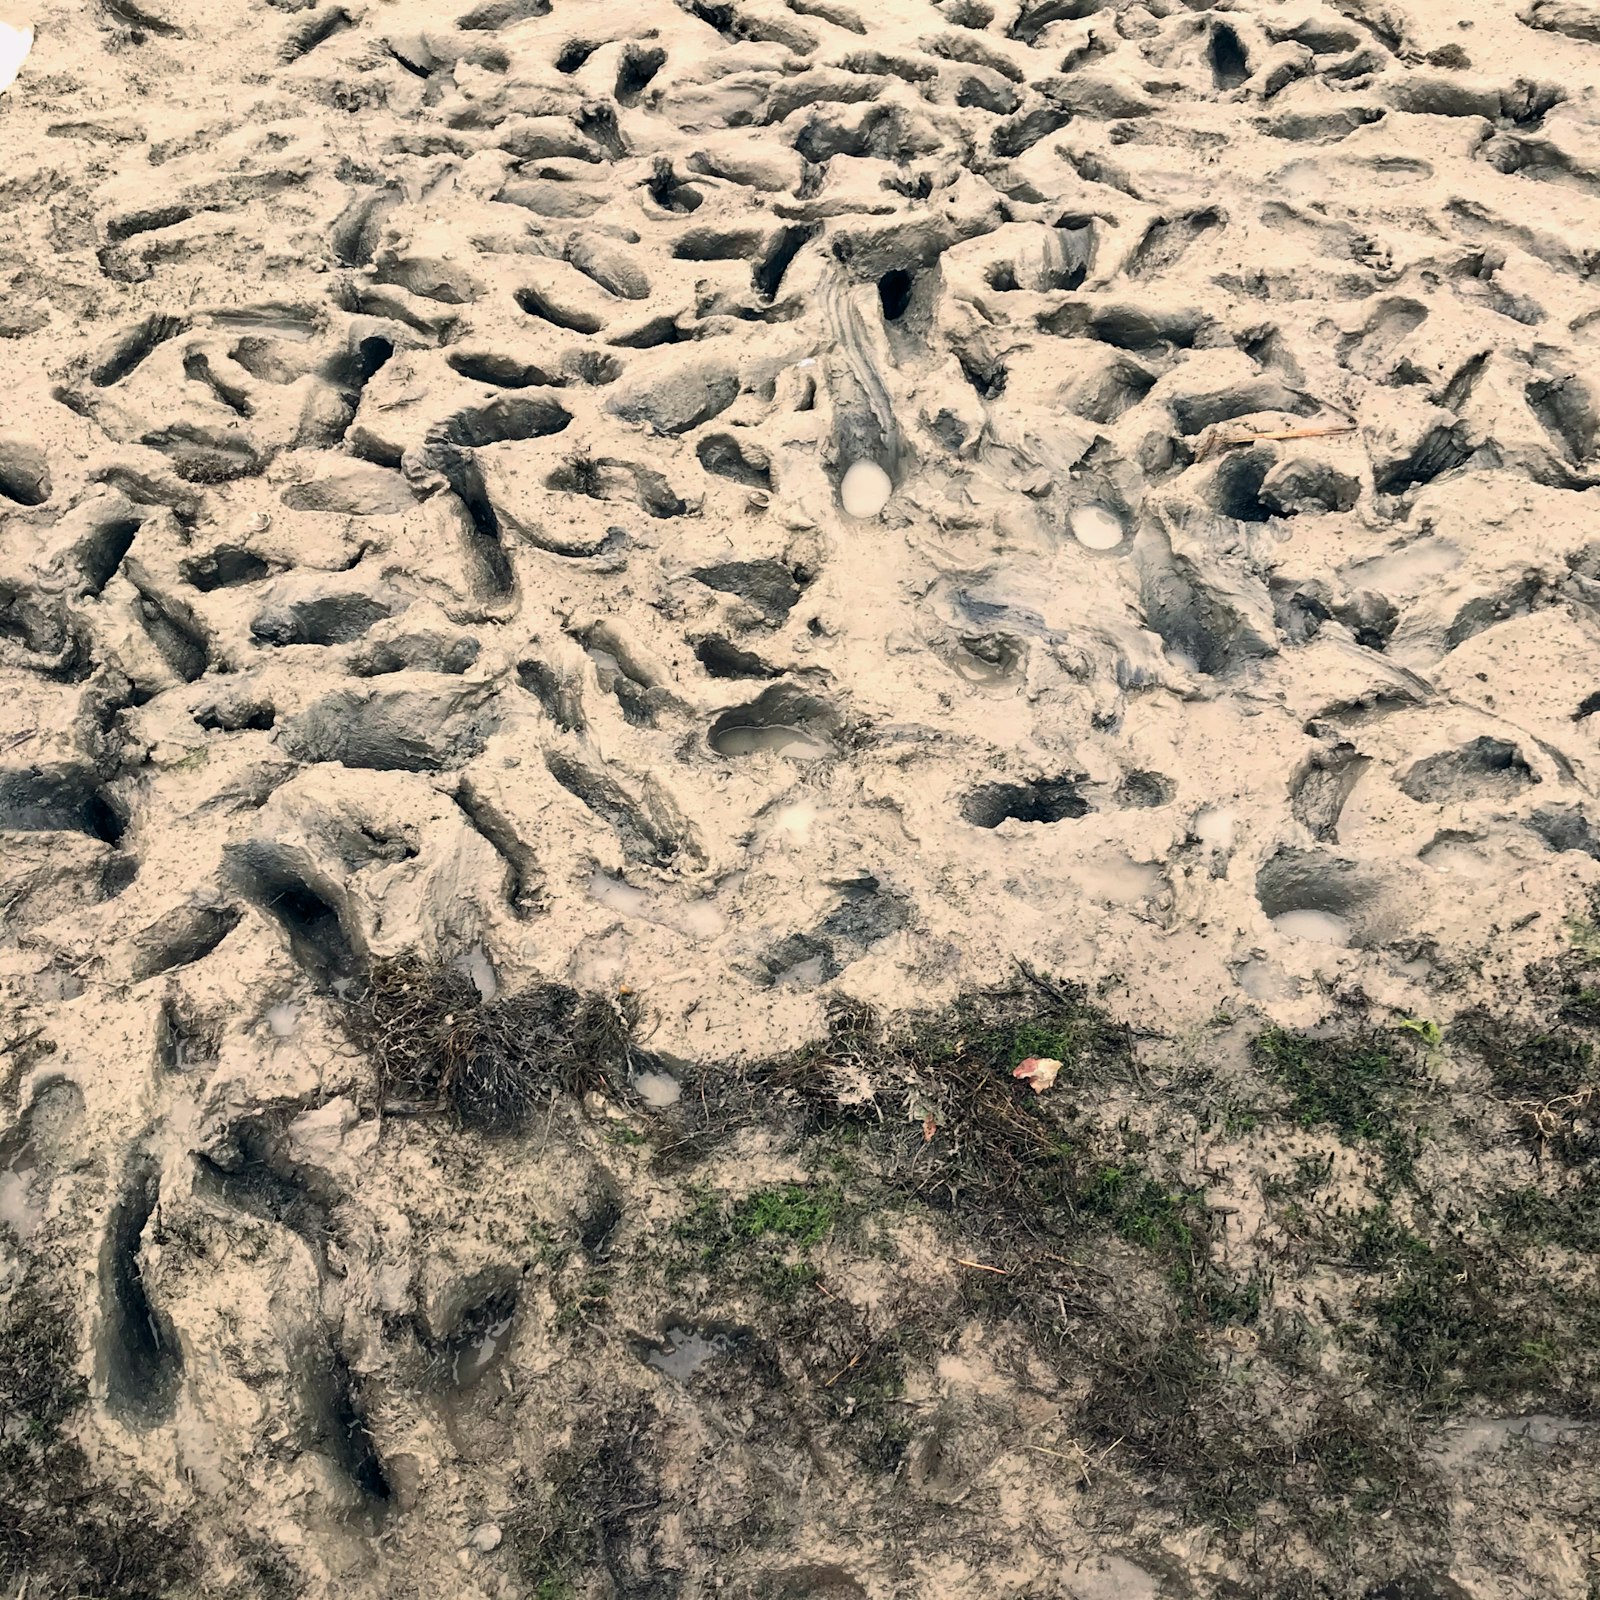 Footprints in mud